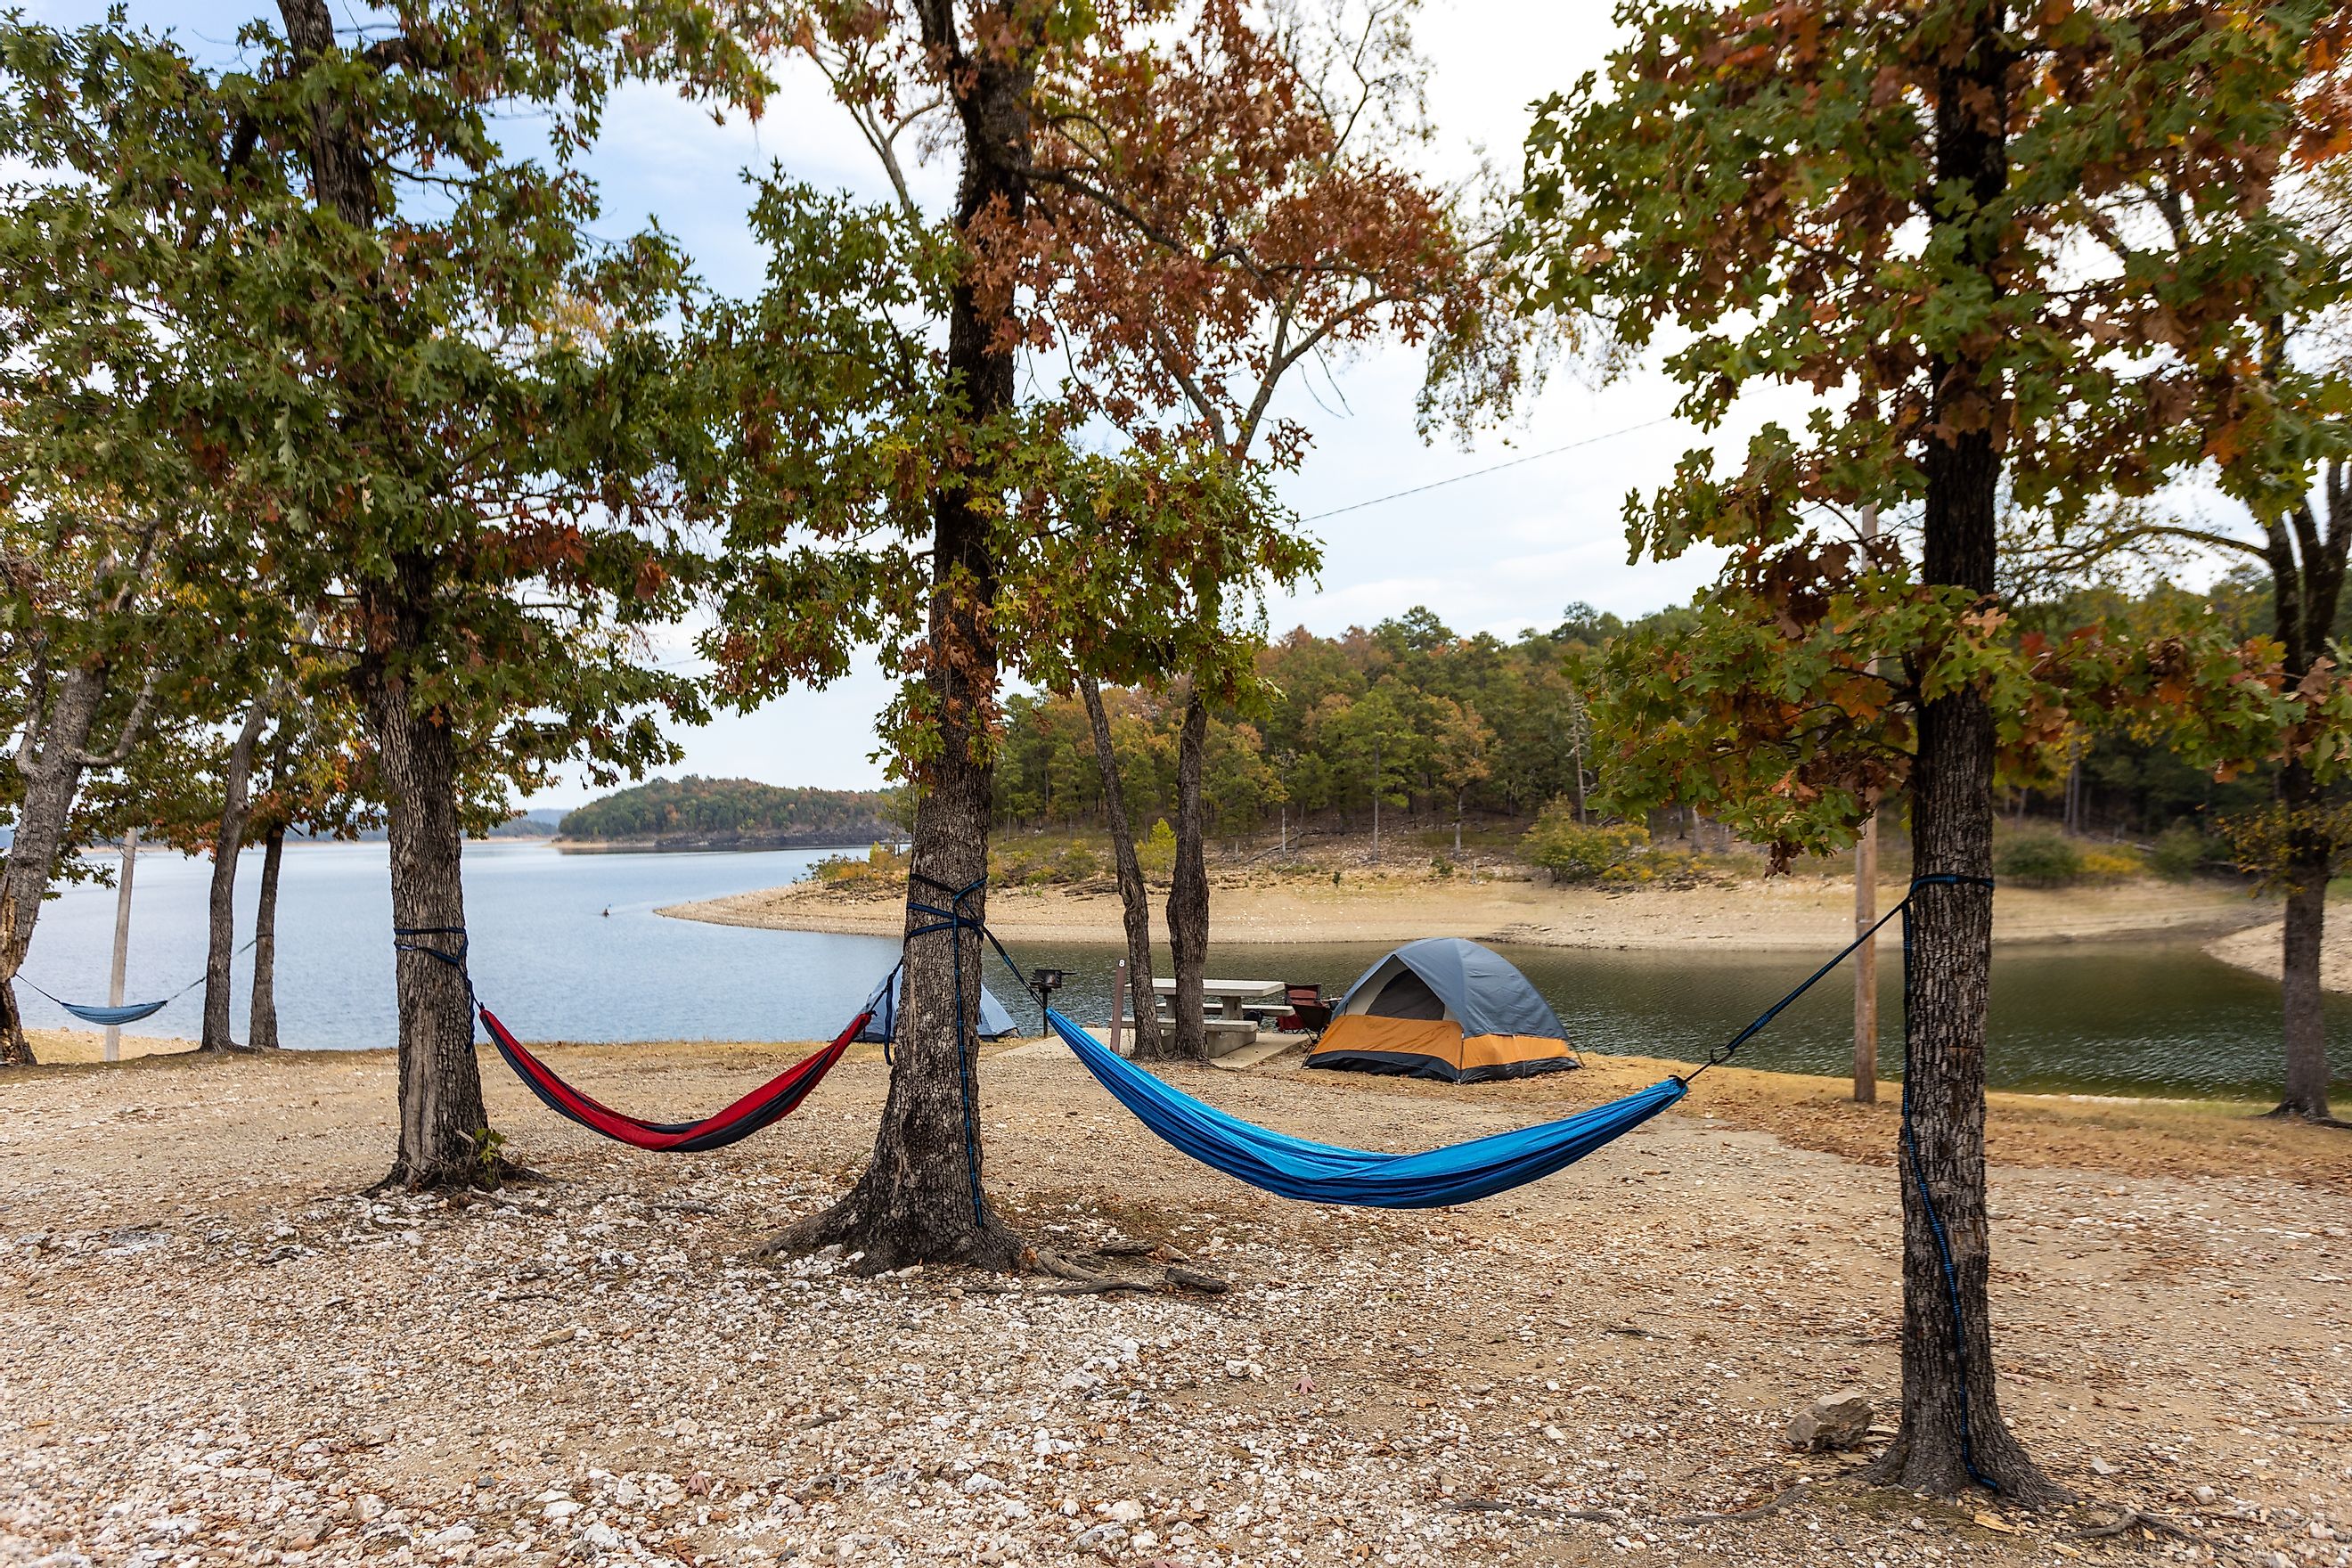 Camping at Broken bow lake in Oklahoma.